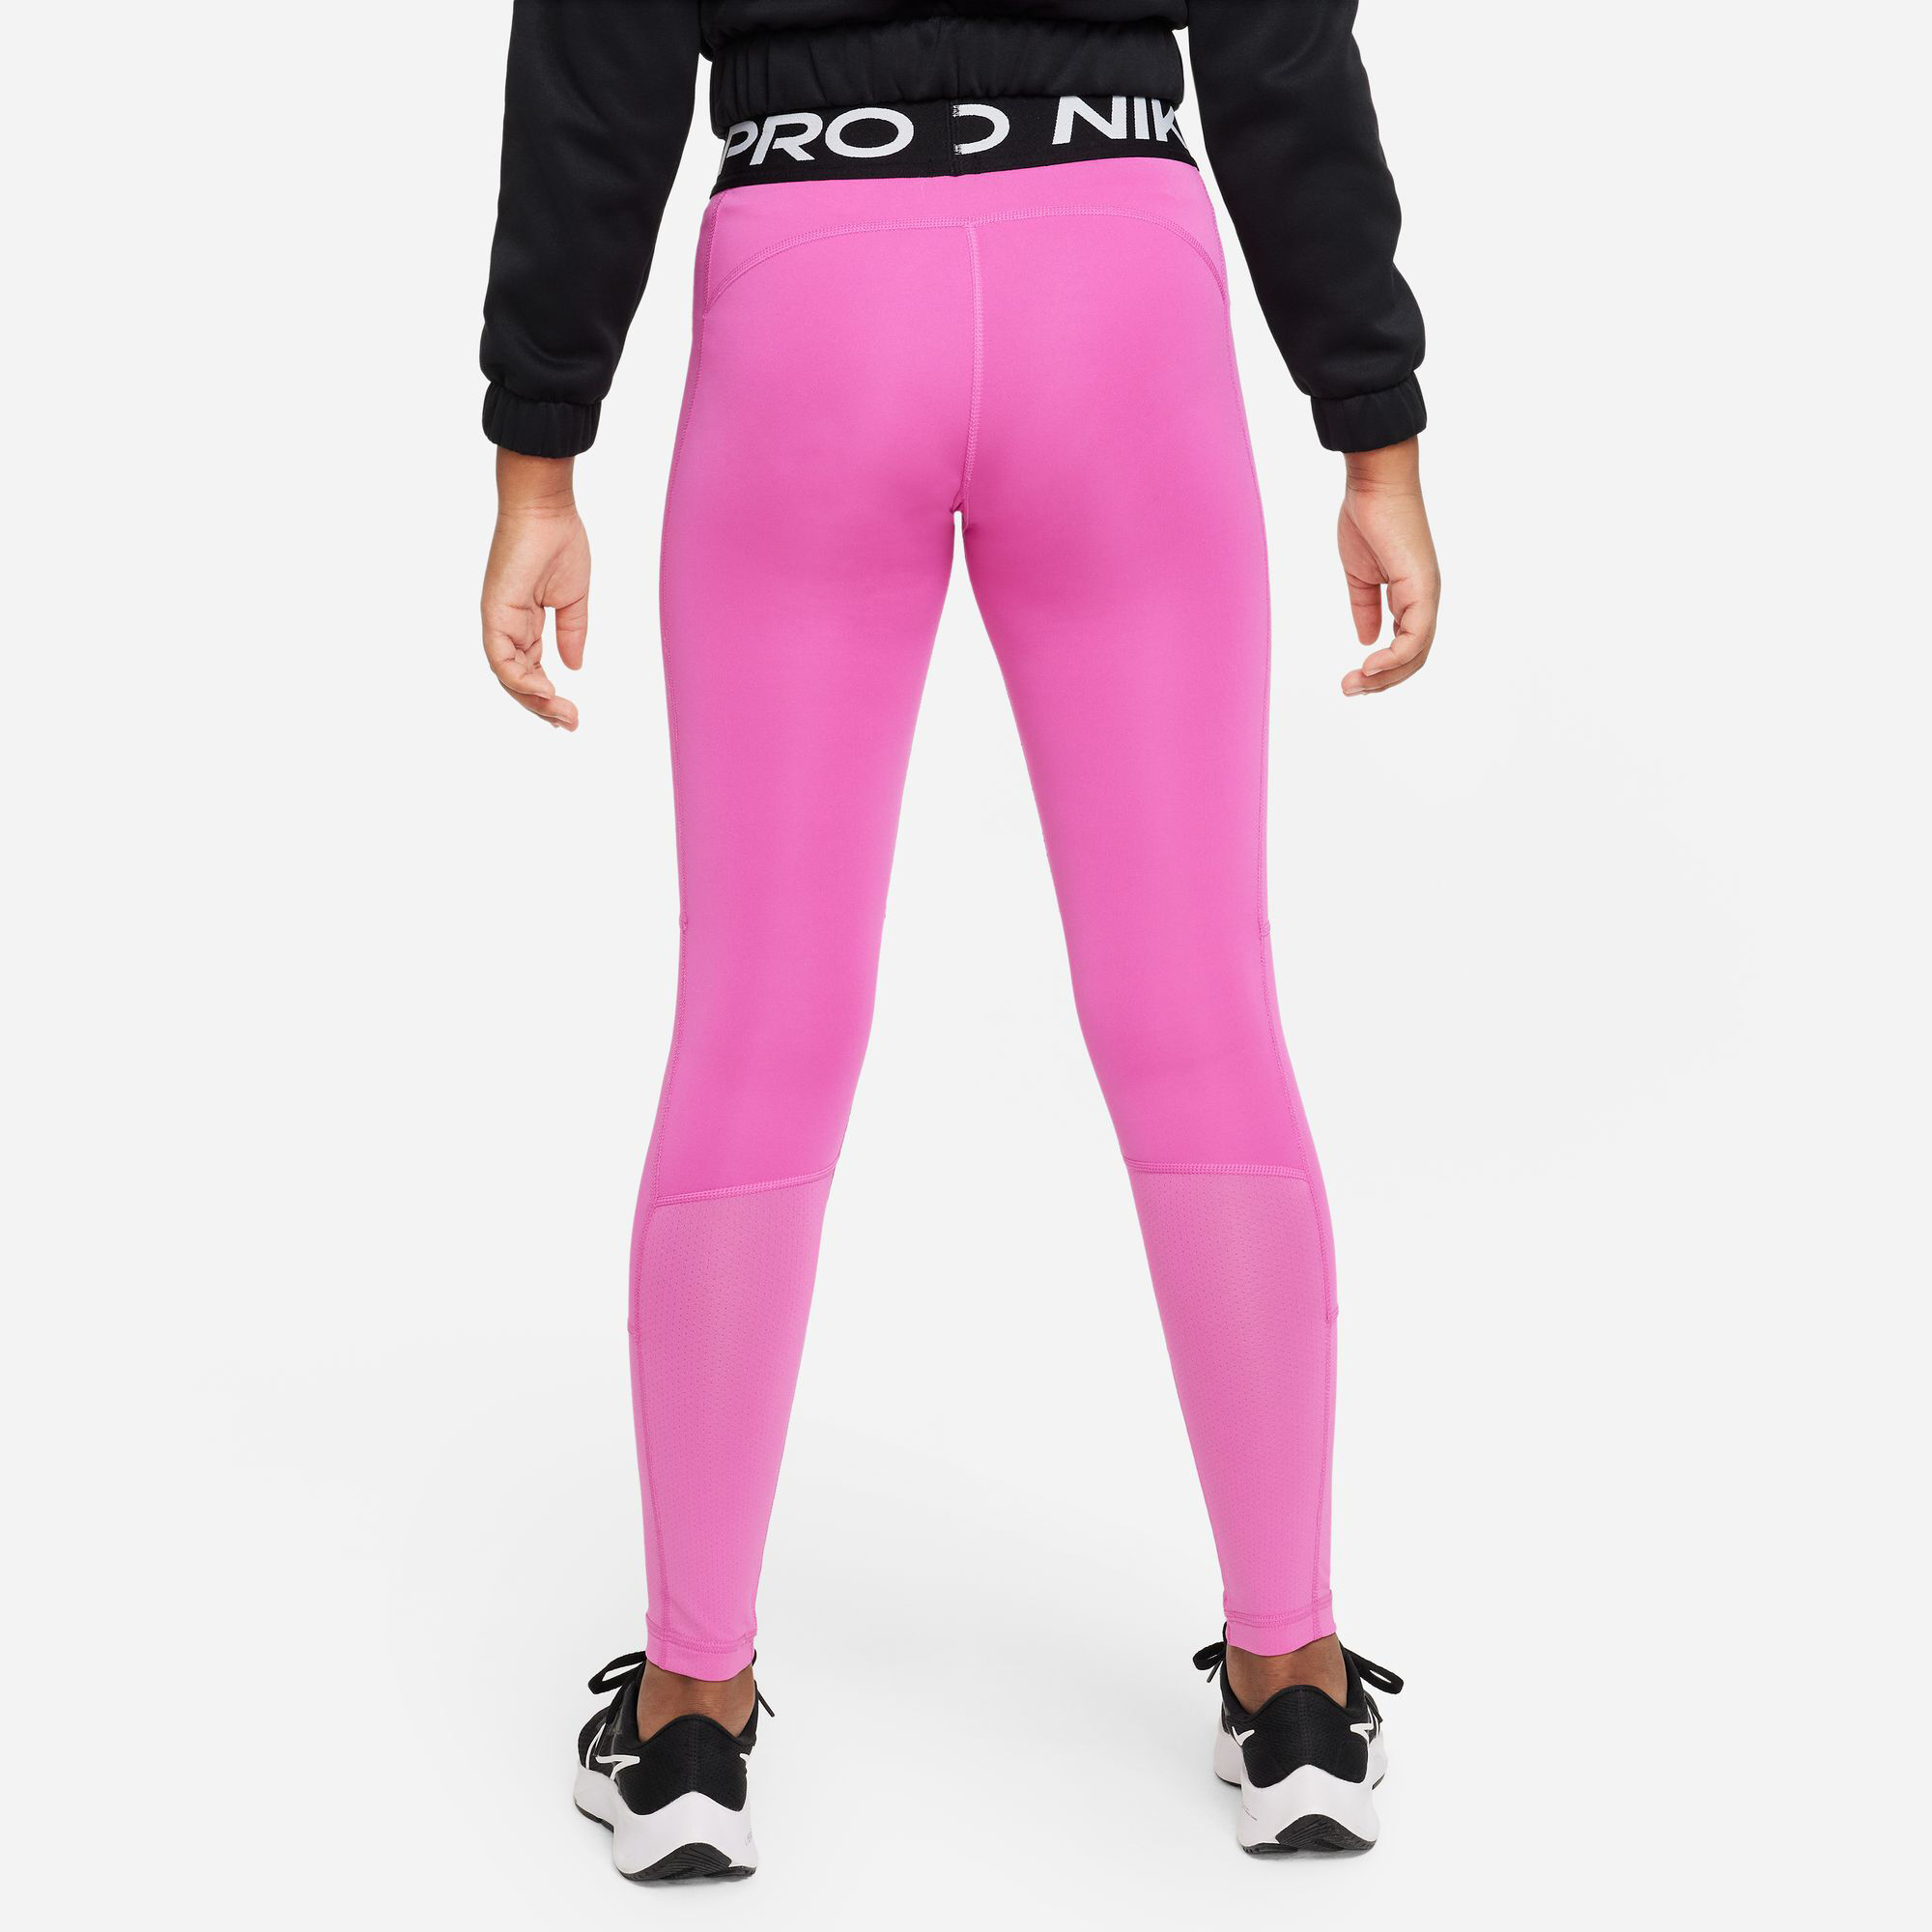 Buy Nike Pro Tight Girls Pink, Black online